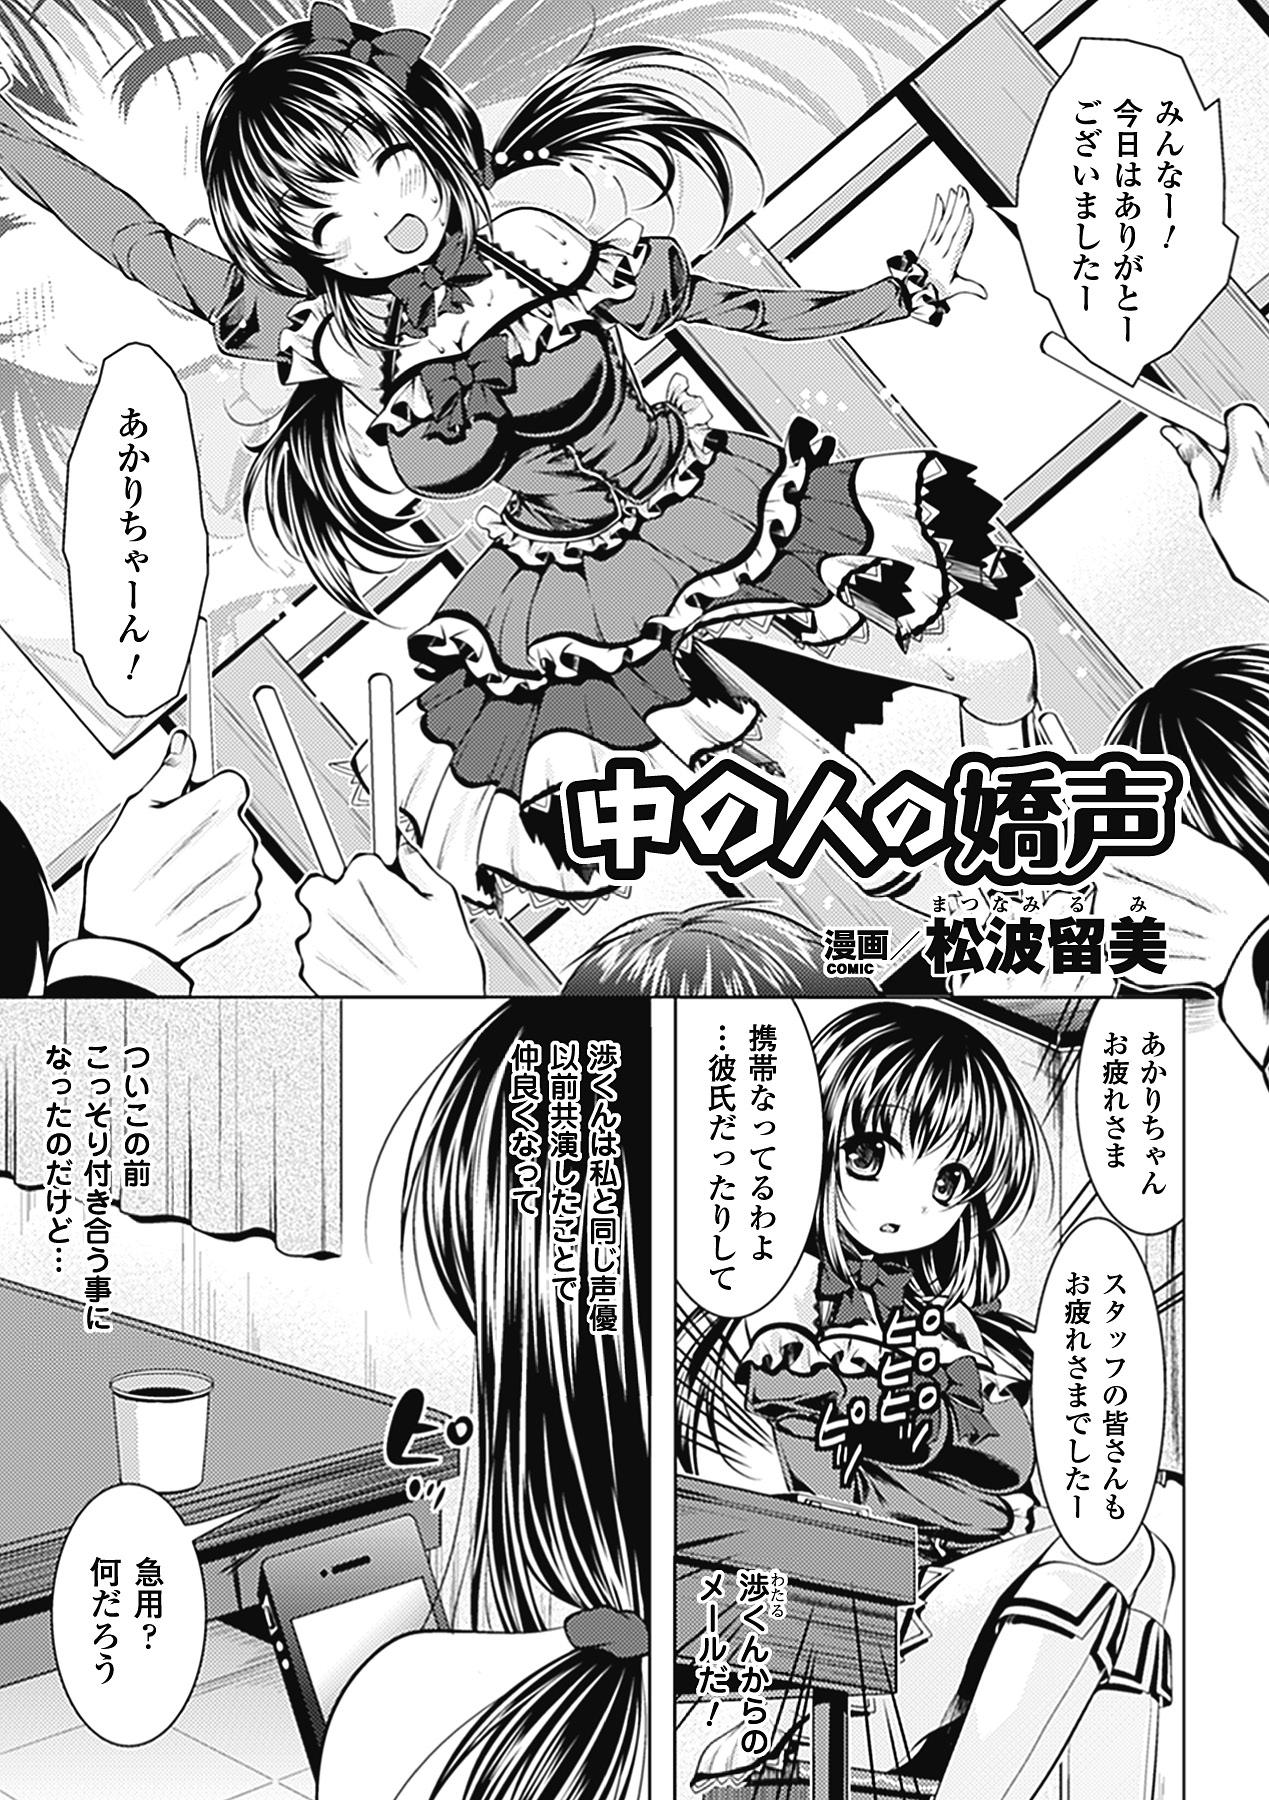 Jerk Off Kimoman × Bishoujo Anthology Comics Vol.1 Nuru Massage - Page 5